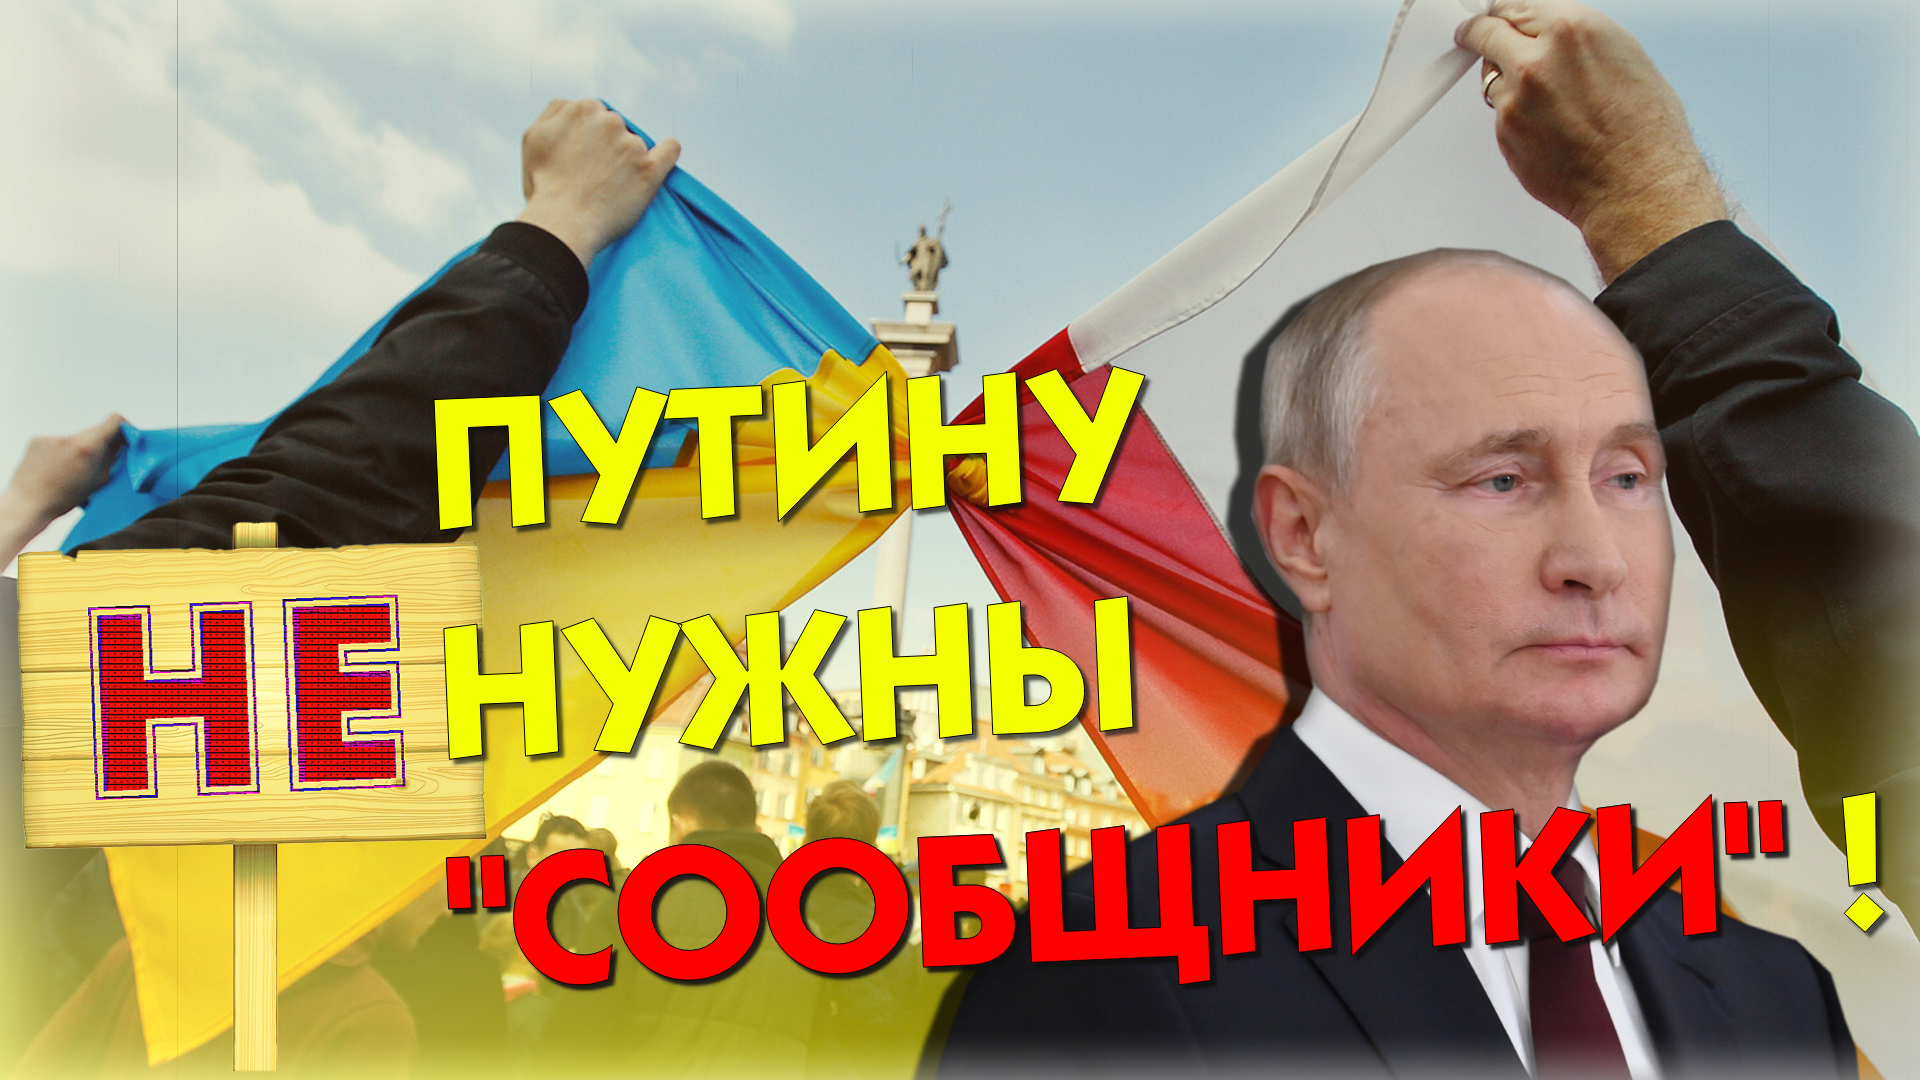 "Освободите для нас нашу страну!" Президент РФ Путин о том, если поляки решат зайти на Украину